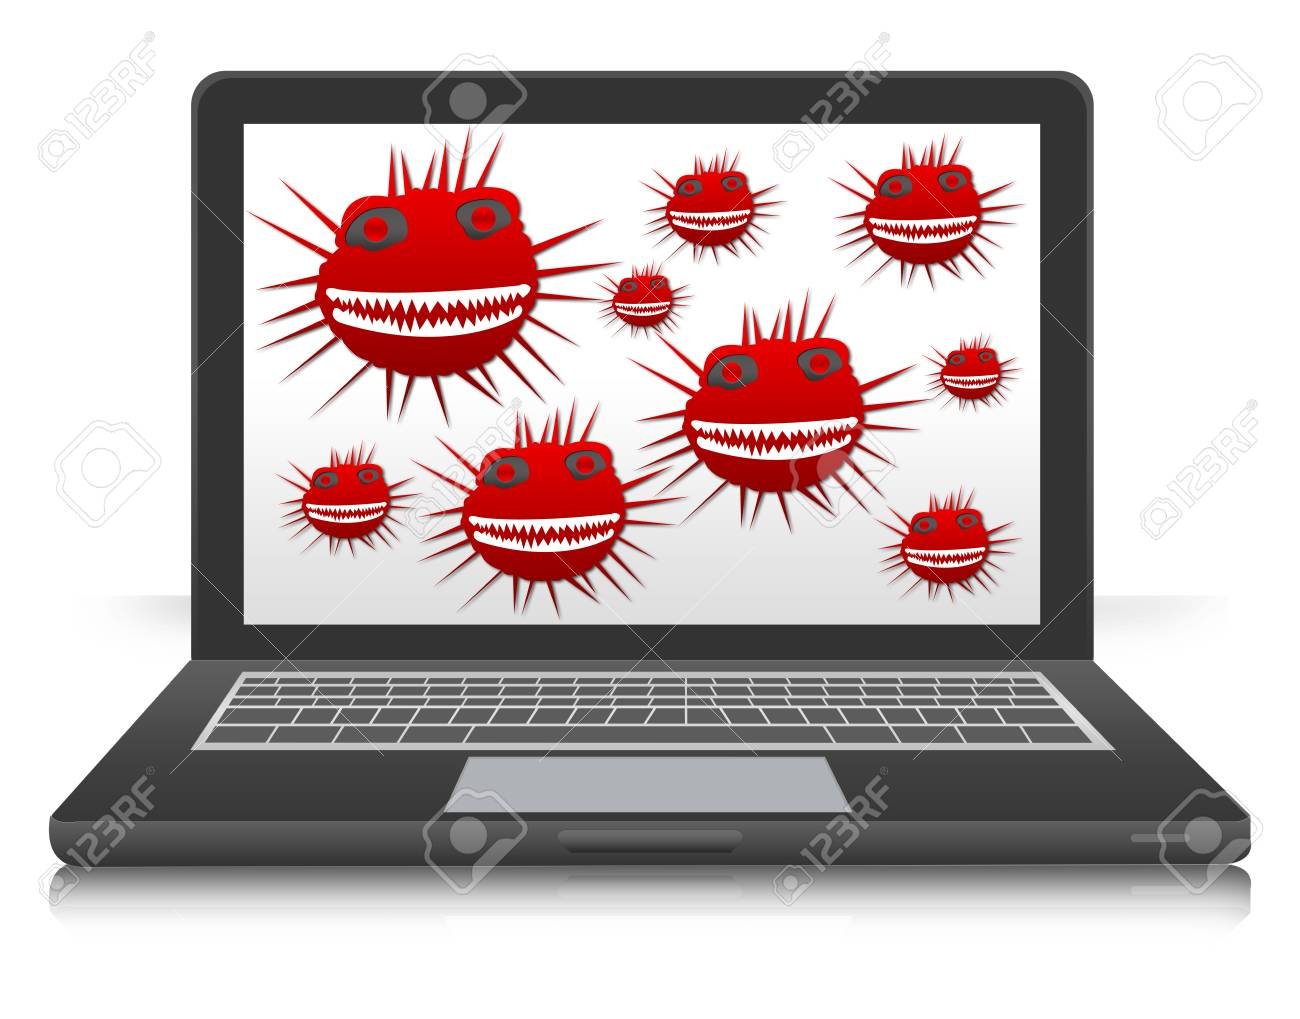 Computer virus is. Компьютерные вирусы. Вирус на компьютере. Компьютерные вирусы картинки. Компьютерный вирус иллюстрация.